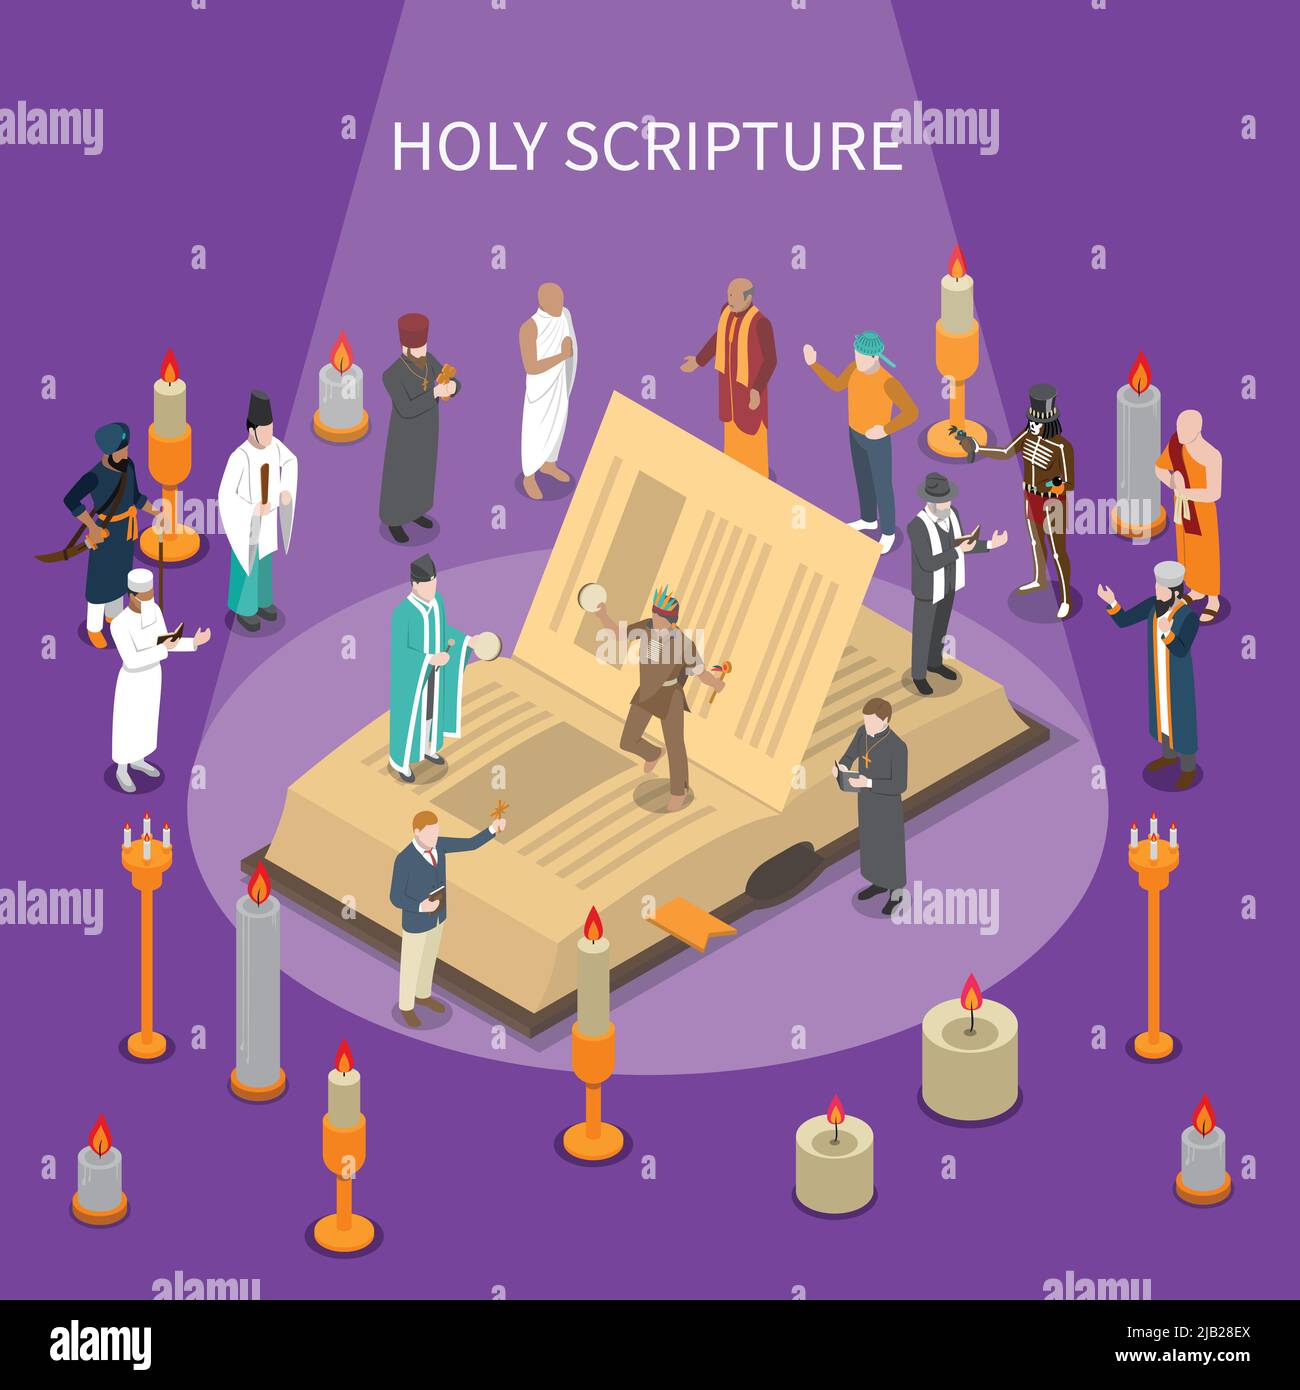 Heilige Schrift isometrische Komposition mit offenem Buch, Menschen aus den Weltreligionen, Kerzen auf violettem Hintergrund Vektor-Illustration Stock Vektor